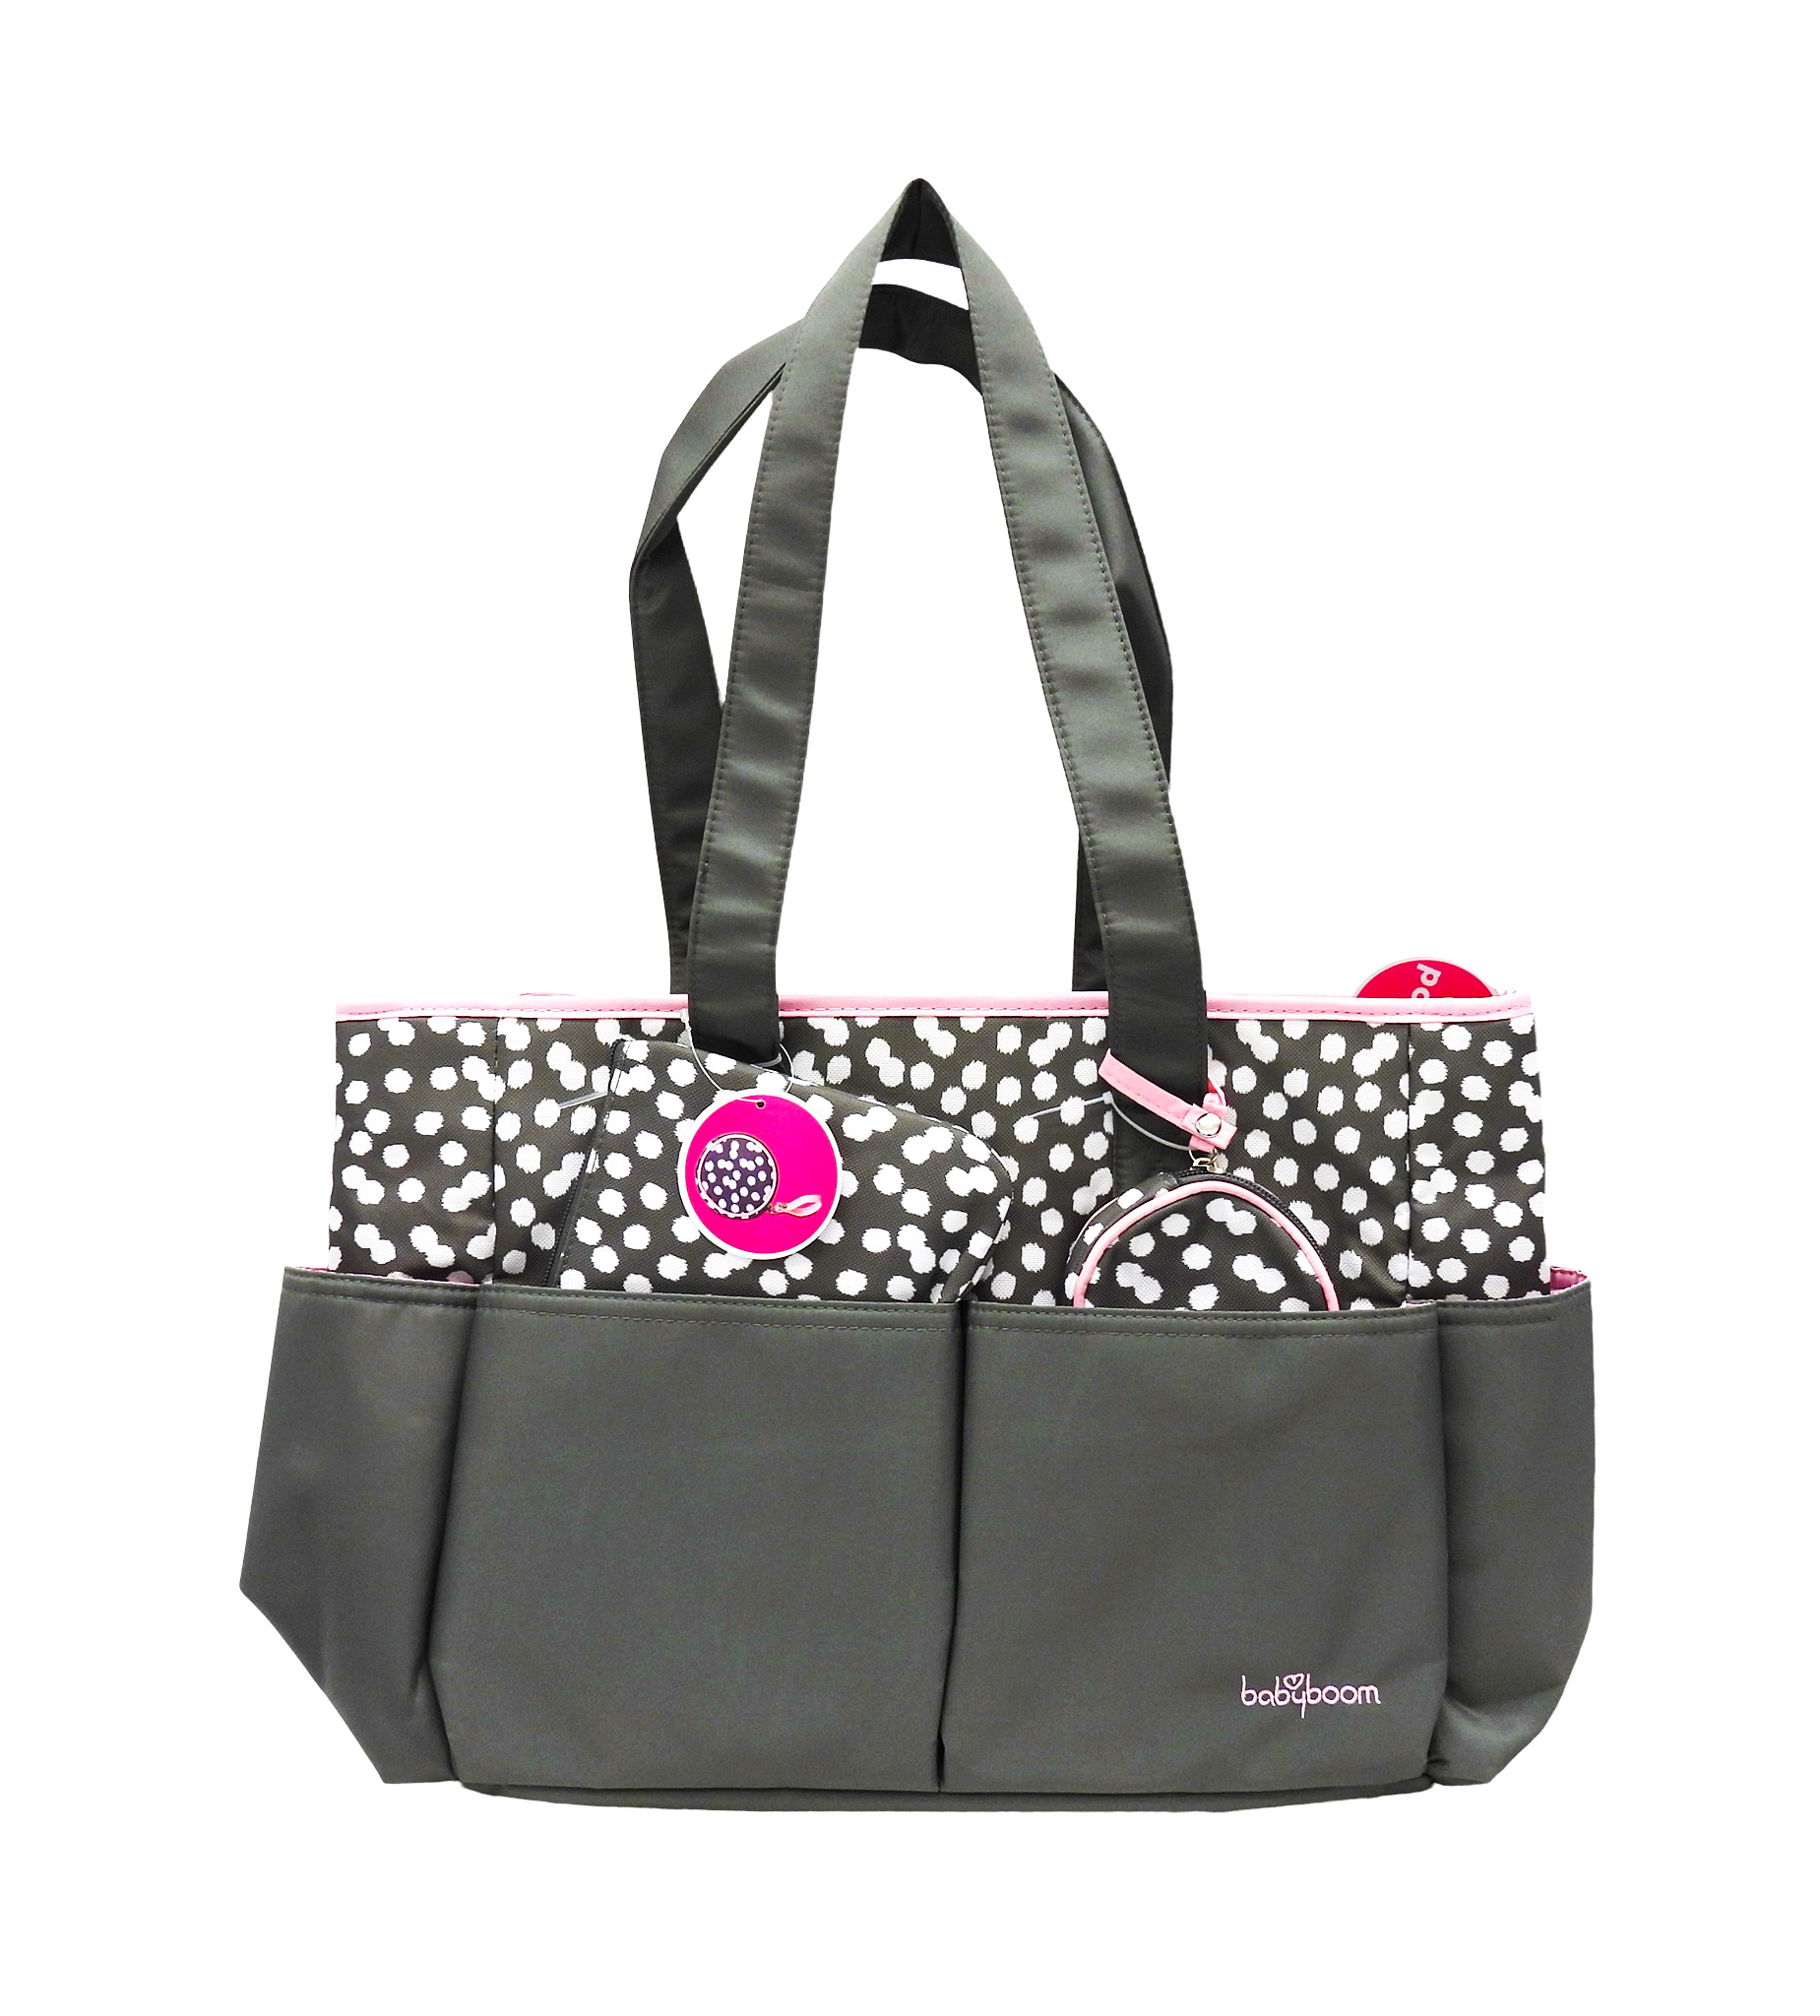 4in1 Diaper Bag set Grey/Pink